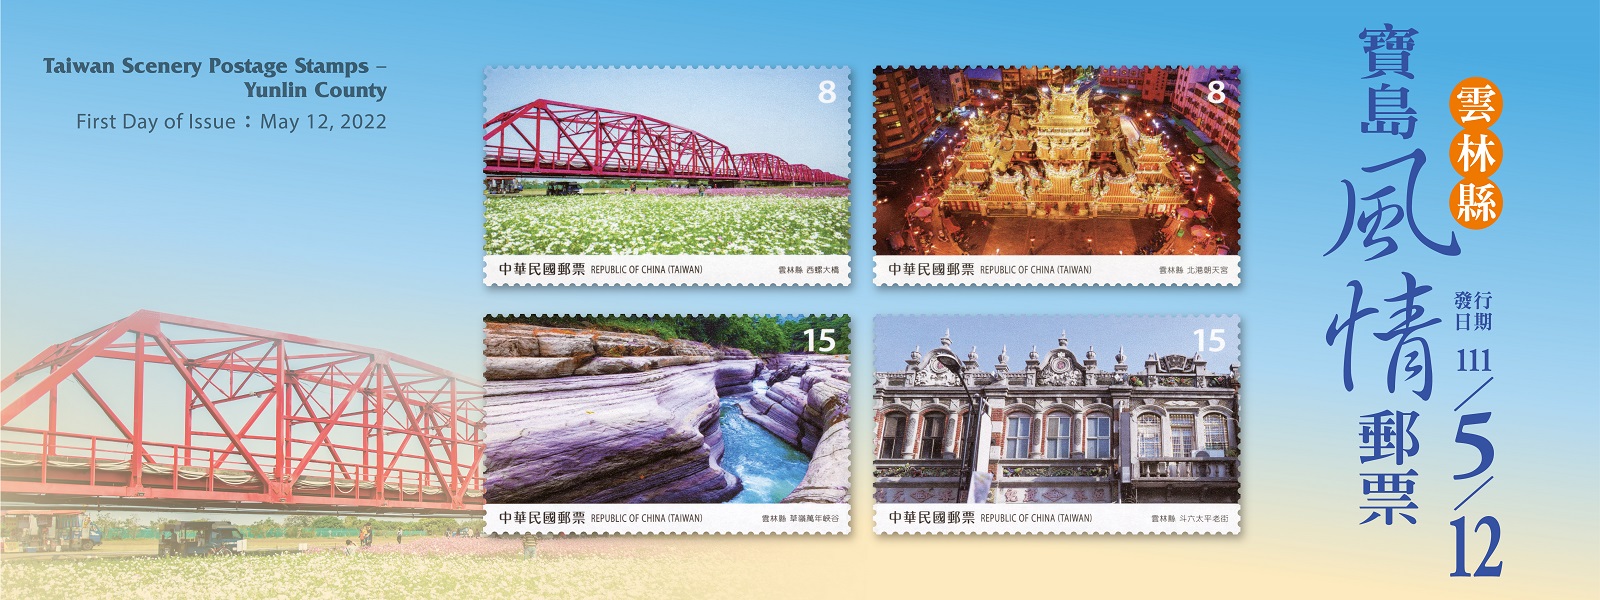 繼105年起發行「寶島風情」系列郵票後，本公司續以雲林縣著名景點為主題，發行郵票1套4枚。